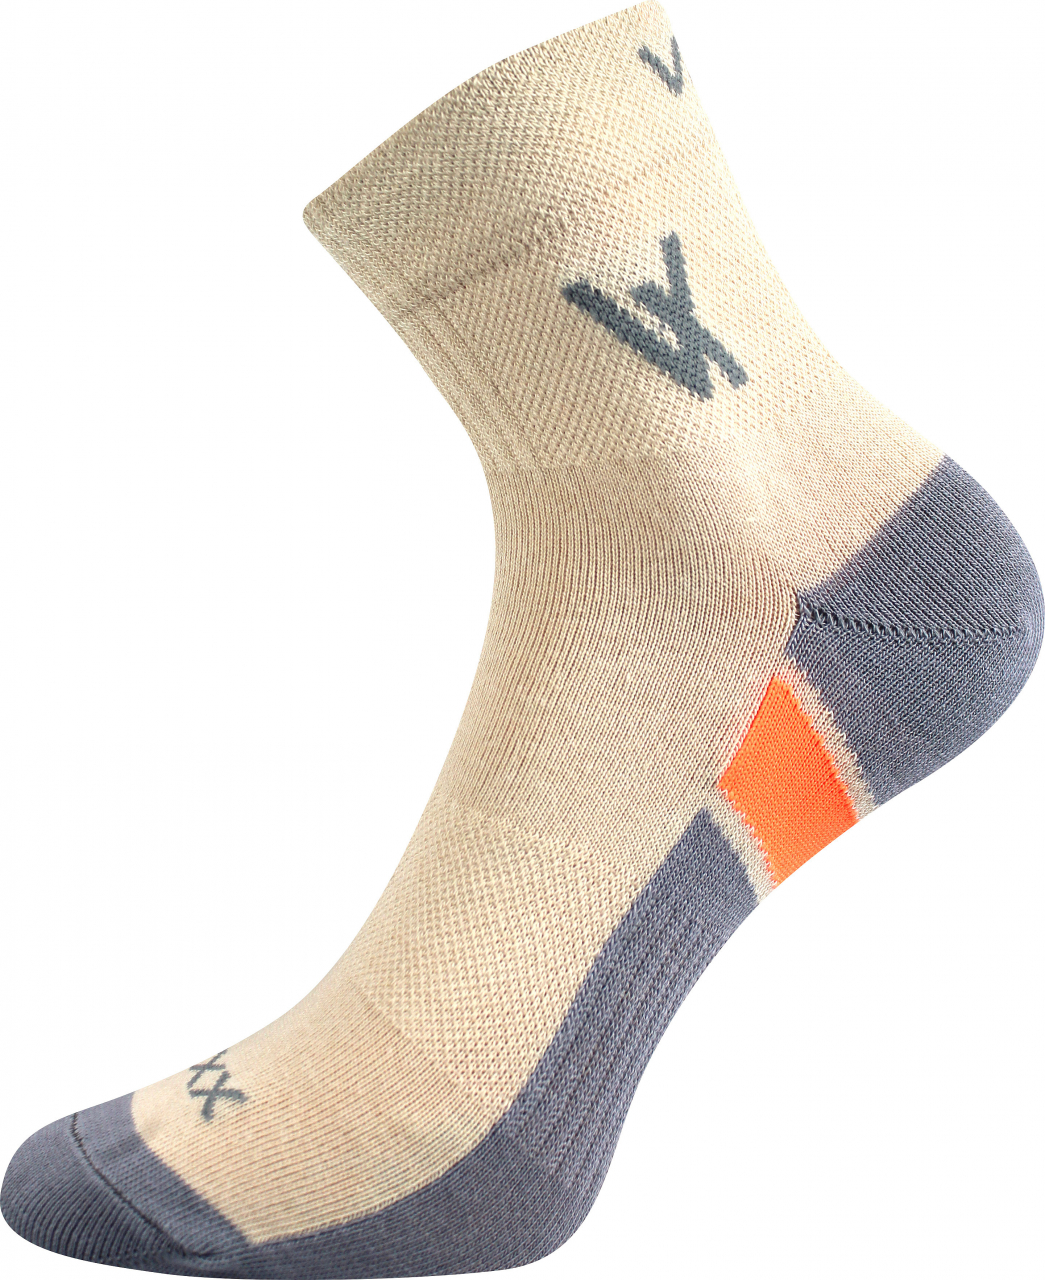 Ponožky sportovní Voxx Neo - béžové, 39-42